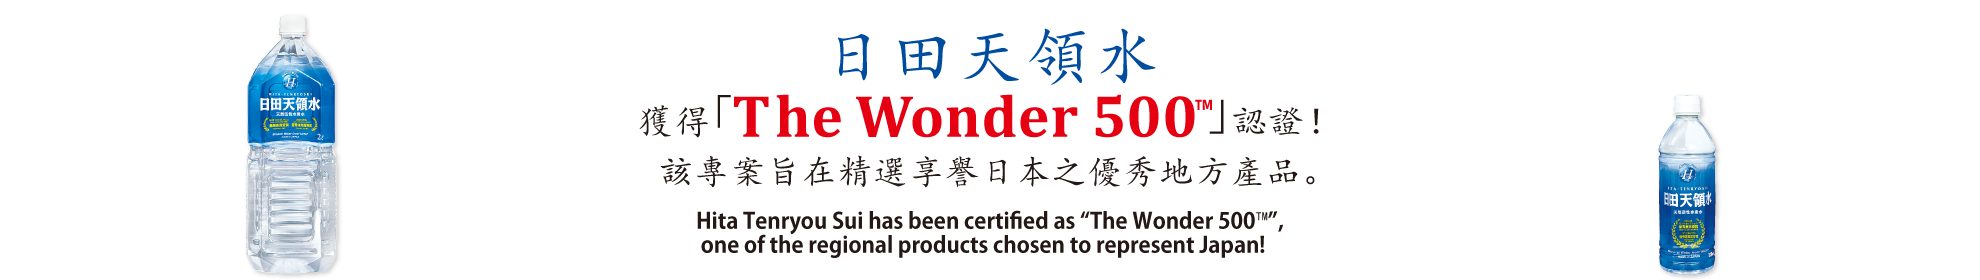 wonder500™ banner